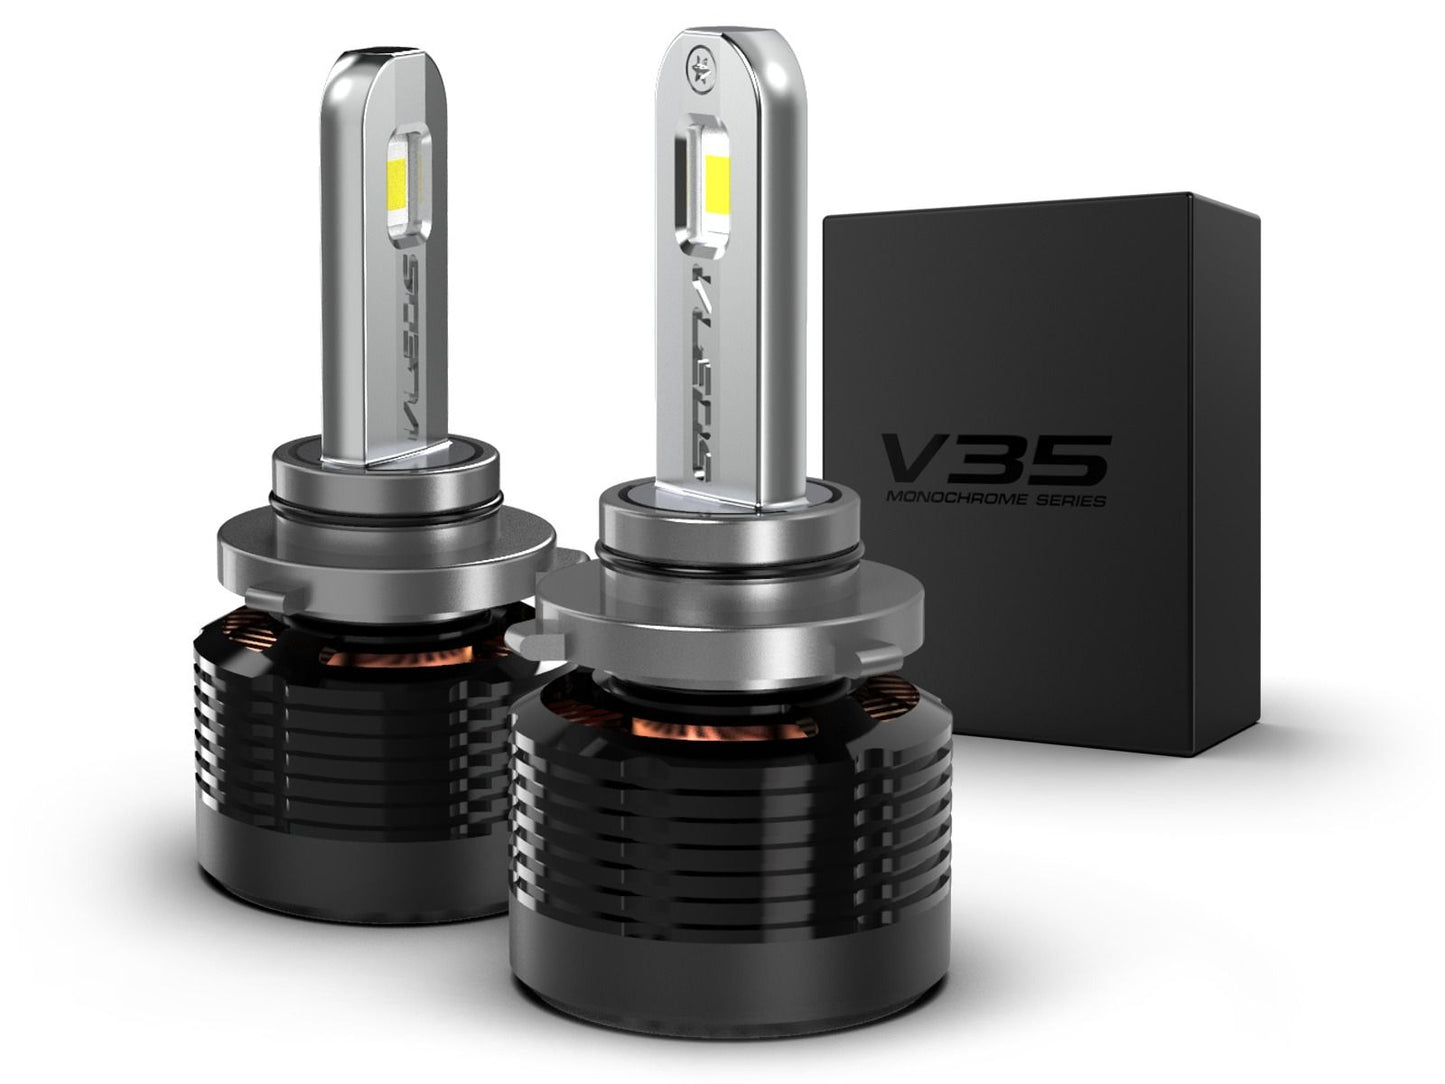 9005: VLEDS V35 Monochrome Series